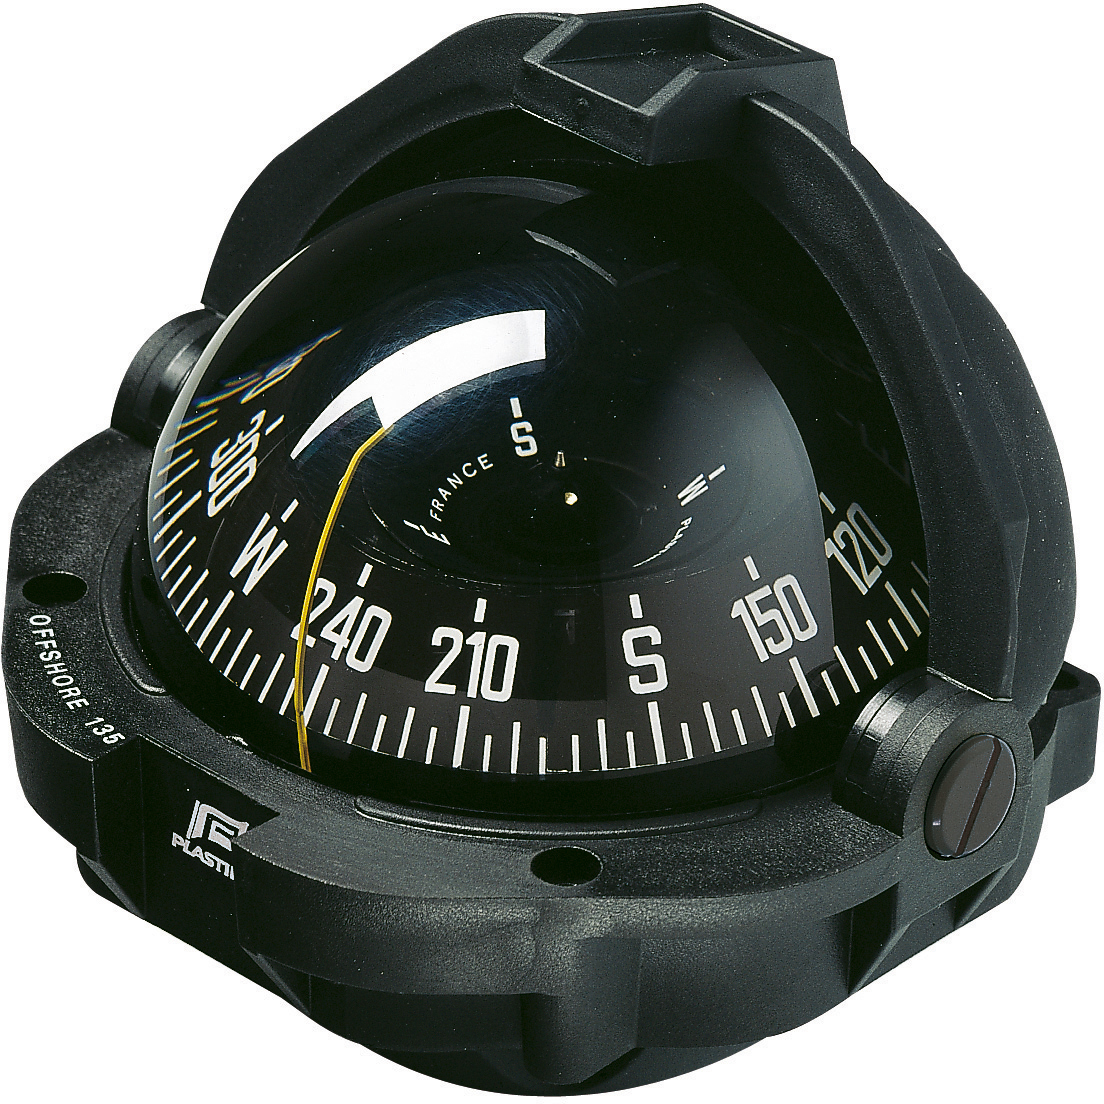 Rattmerket kompass 135 Solas/ Med 96/98